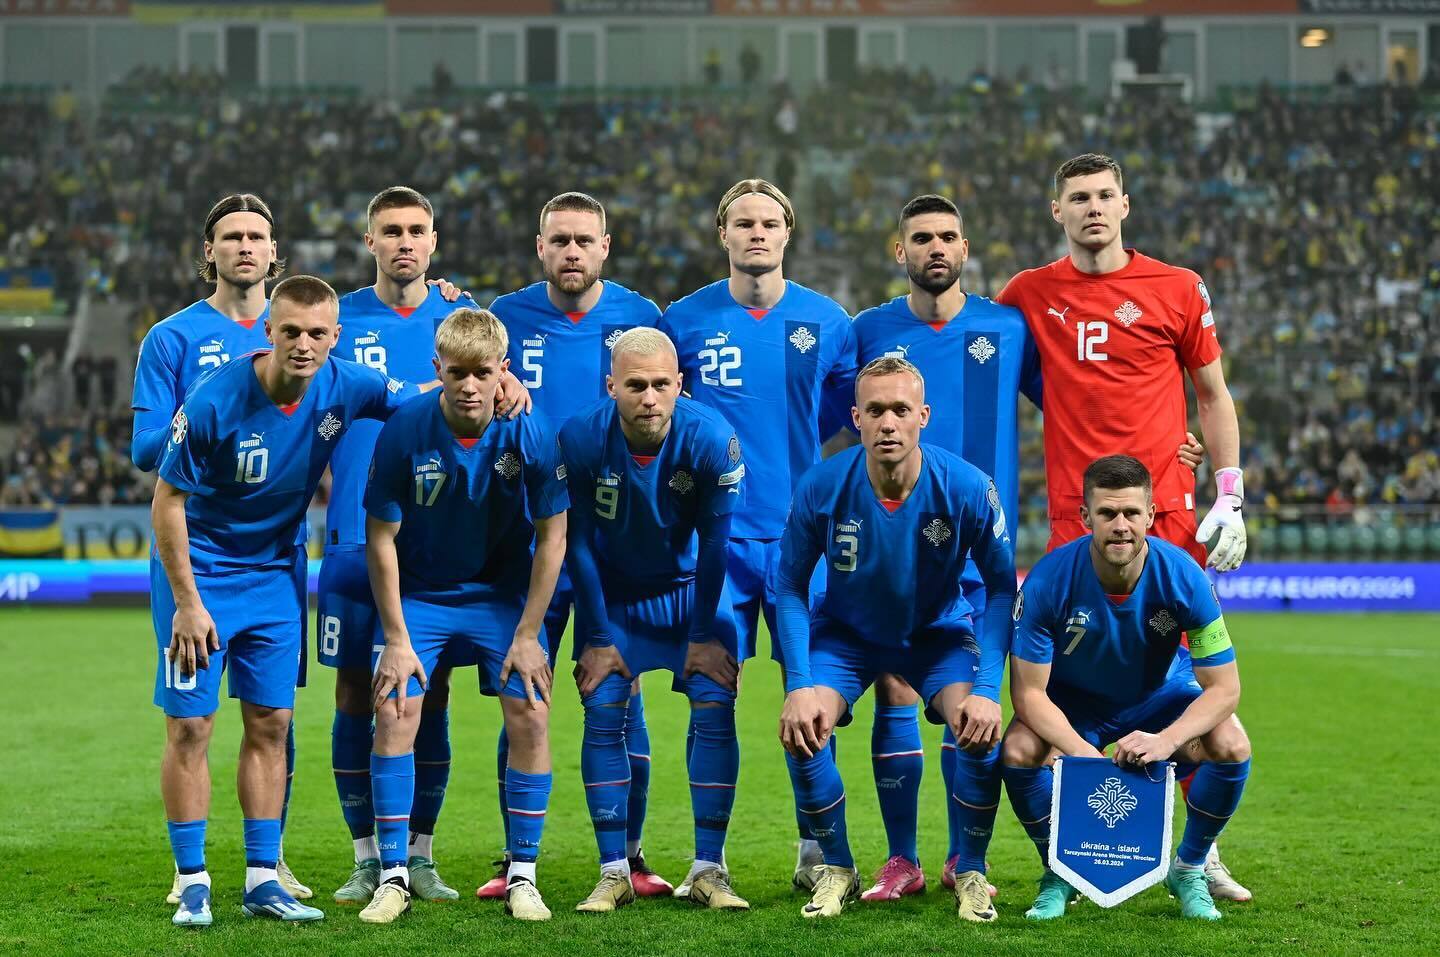 Ісландія встановила історичний антирекорд у матчі з Україною у фіналі плей-оф відбору на Євро